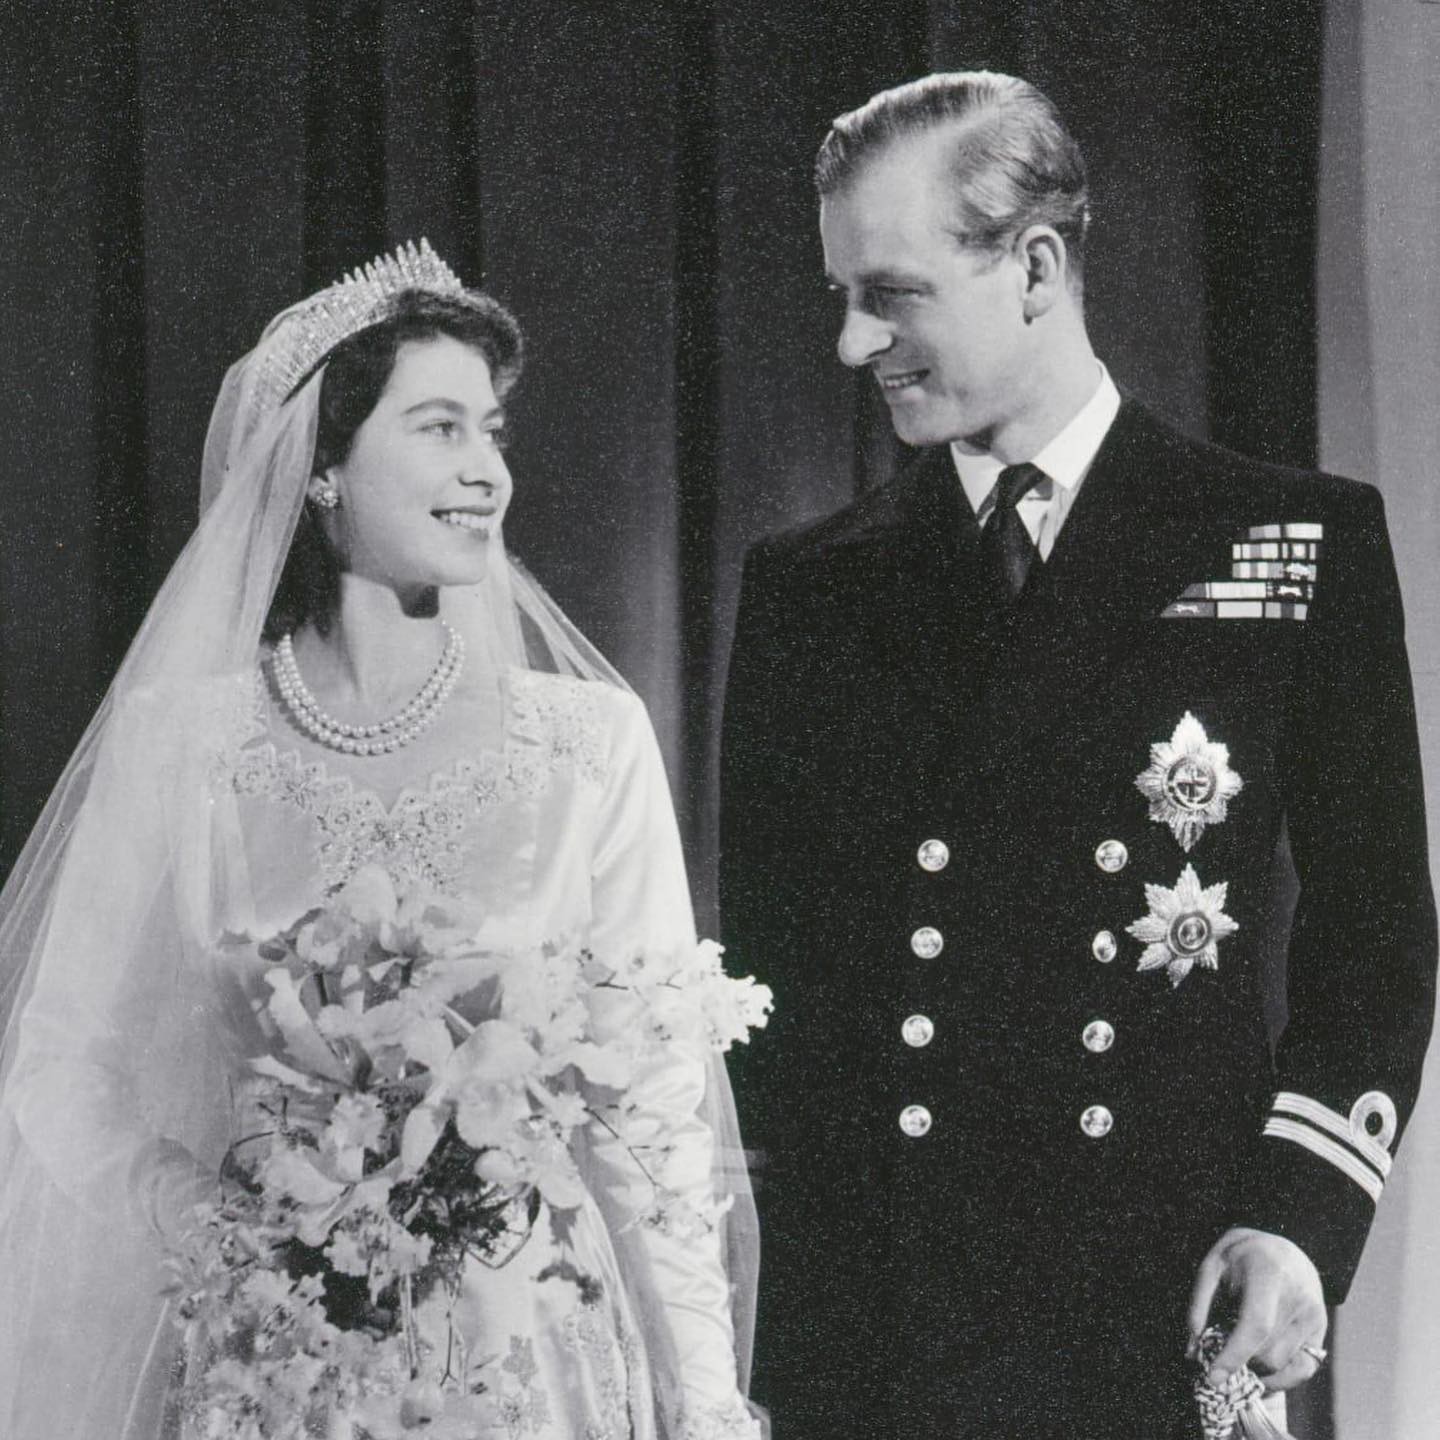 Funeral tem elementos em homenagem ao casamento da Rainha e príncipe Philip (Foto: Reprodução / Instagram)